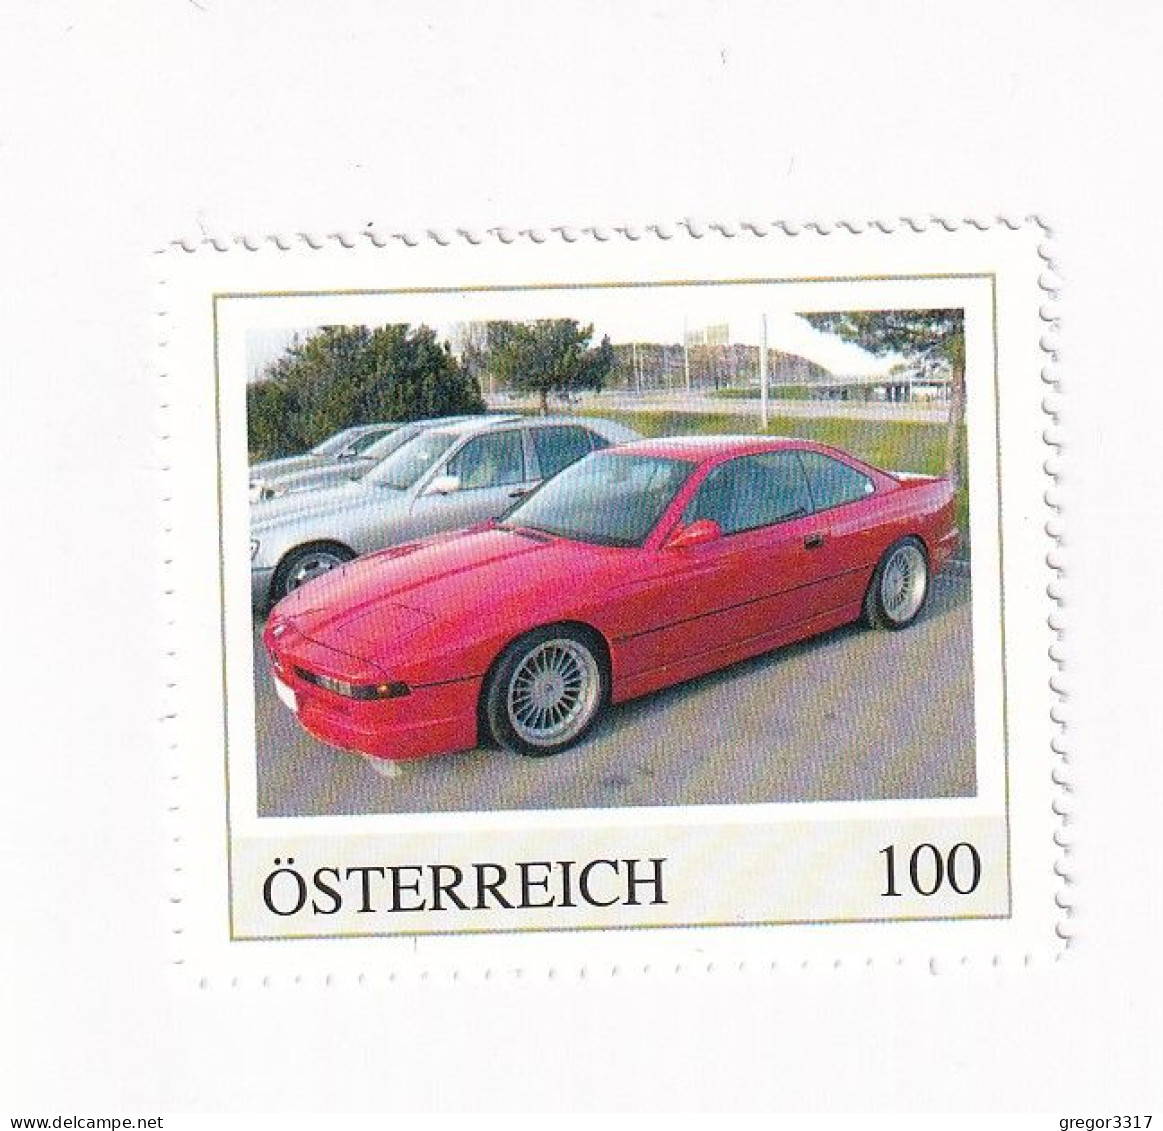 ÖSTERREICH - AUTO -  AUTOMOBILE Im Lauf Der ZEIT - BMW 850i  - Personalisierte Briefmarke ** Postfrisch - Personalisierte Briefmarken